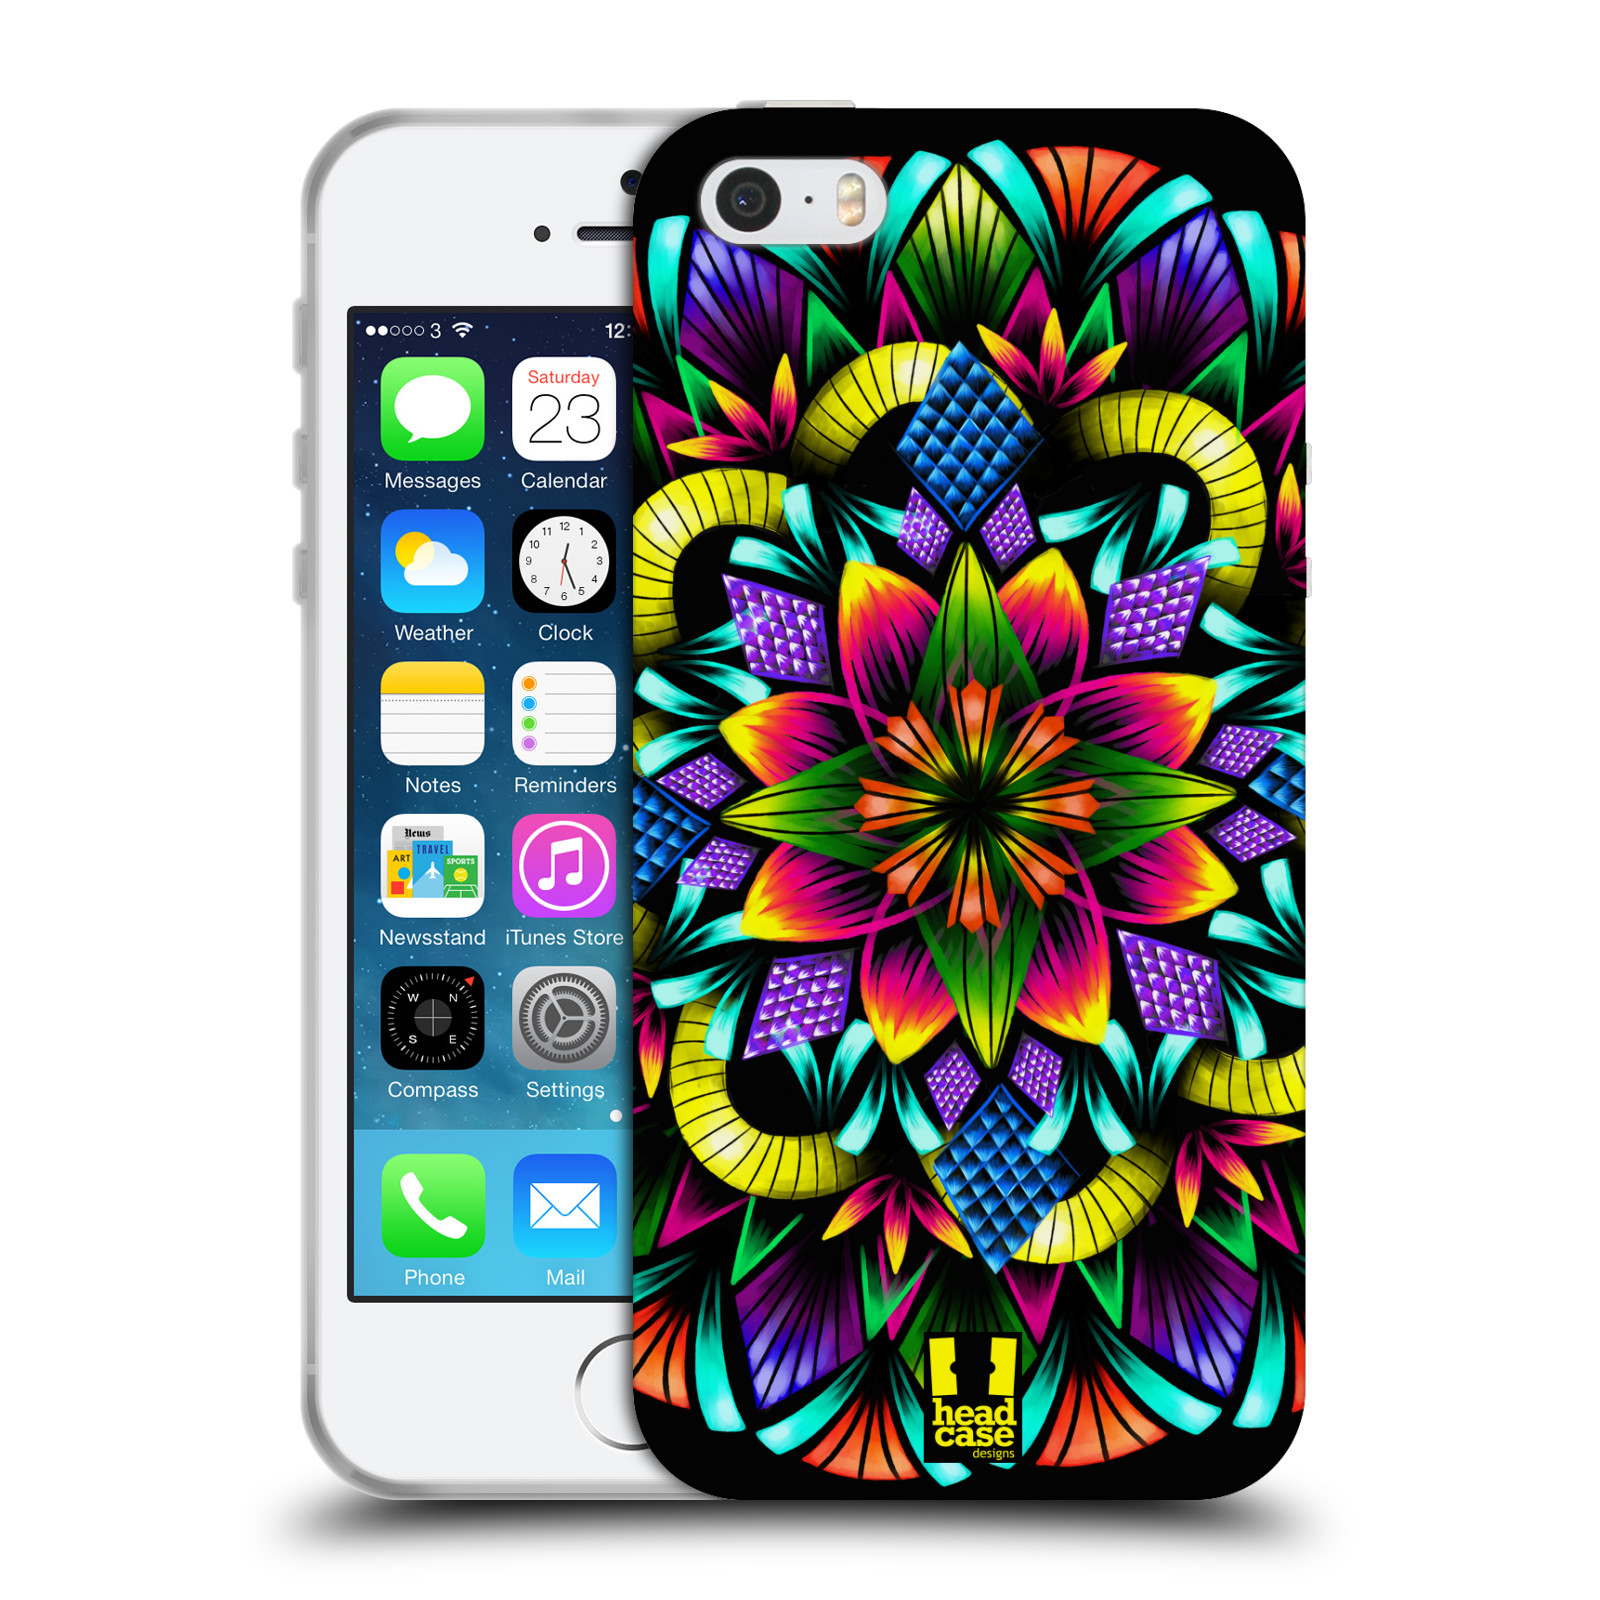 Silikonové pouzdro na mobil Apple iPhone 5, 5S, SE - Head Case - Květina mandala (Silikonový kryt, obal, pouzdro na mobilní telefon Apple iPhone SE, 5S a 5 s motivem Květina mandala)